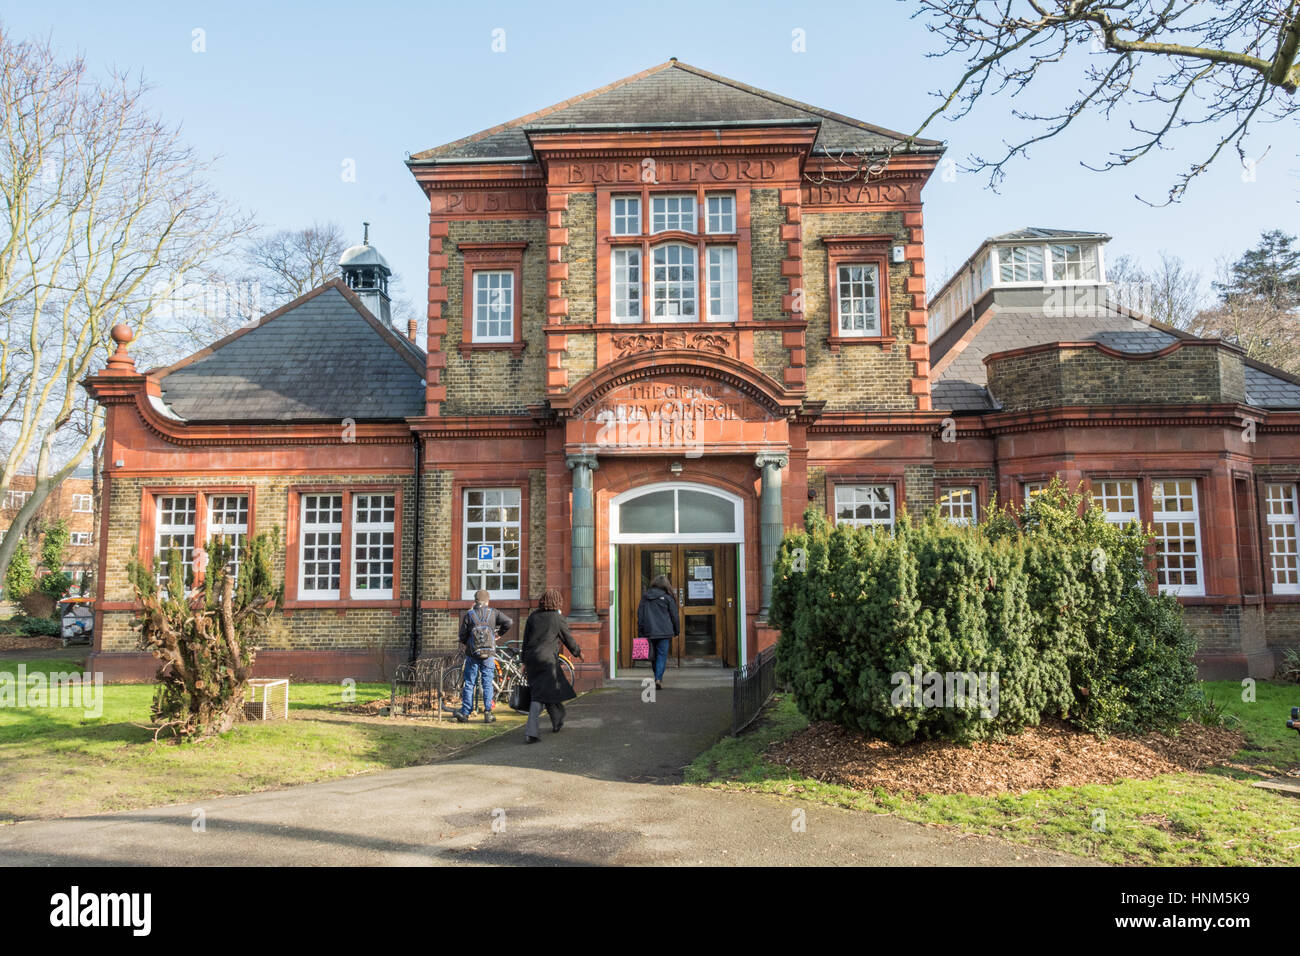 Brentford Library est un bâtiment classé Grade II au Boston Manor Road, Brentford, Londres. Banque D'Images